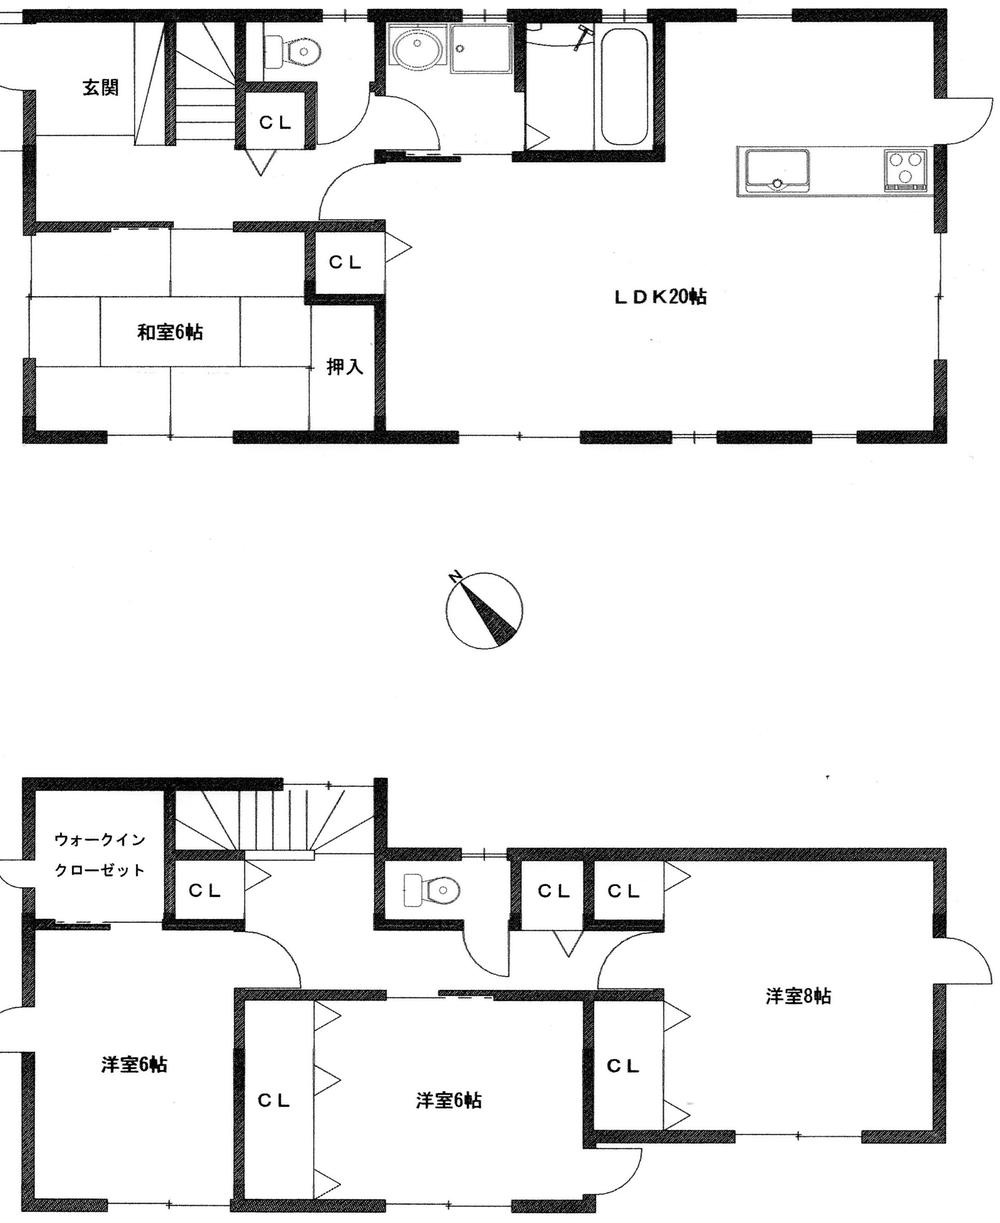 Floor plan. (A Building), Price 29,800,000 yen, 4LDK, Land area 164.82 sq m , Building area 118.43 sq m